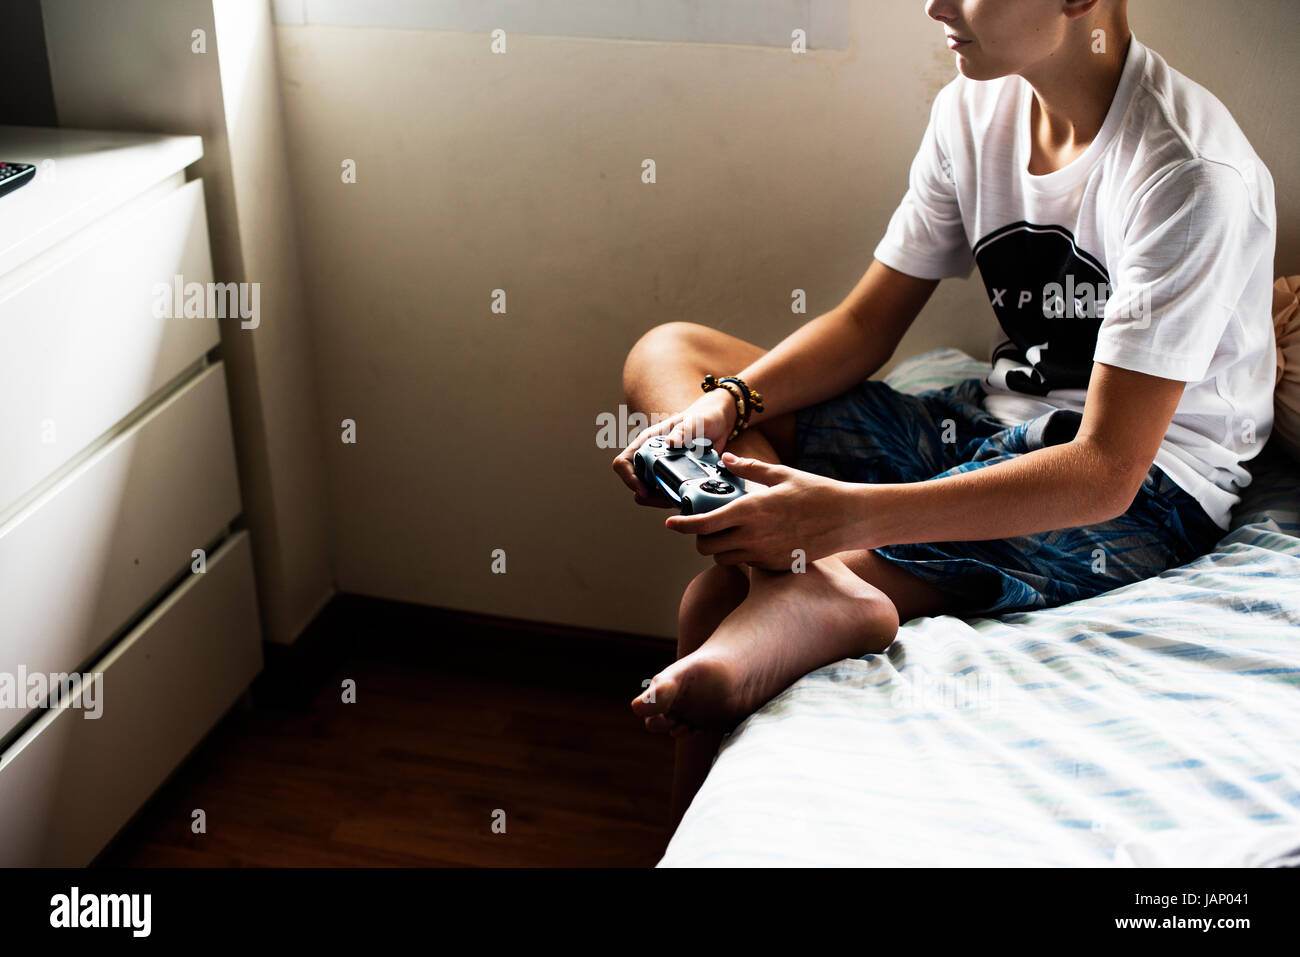 Los jóvenes caucásicos niño sosteniendo control del juego sentada en la cama Foto de stock